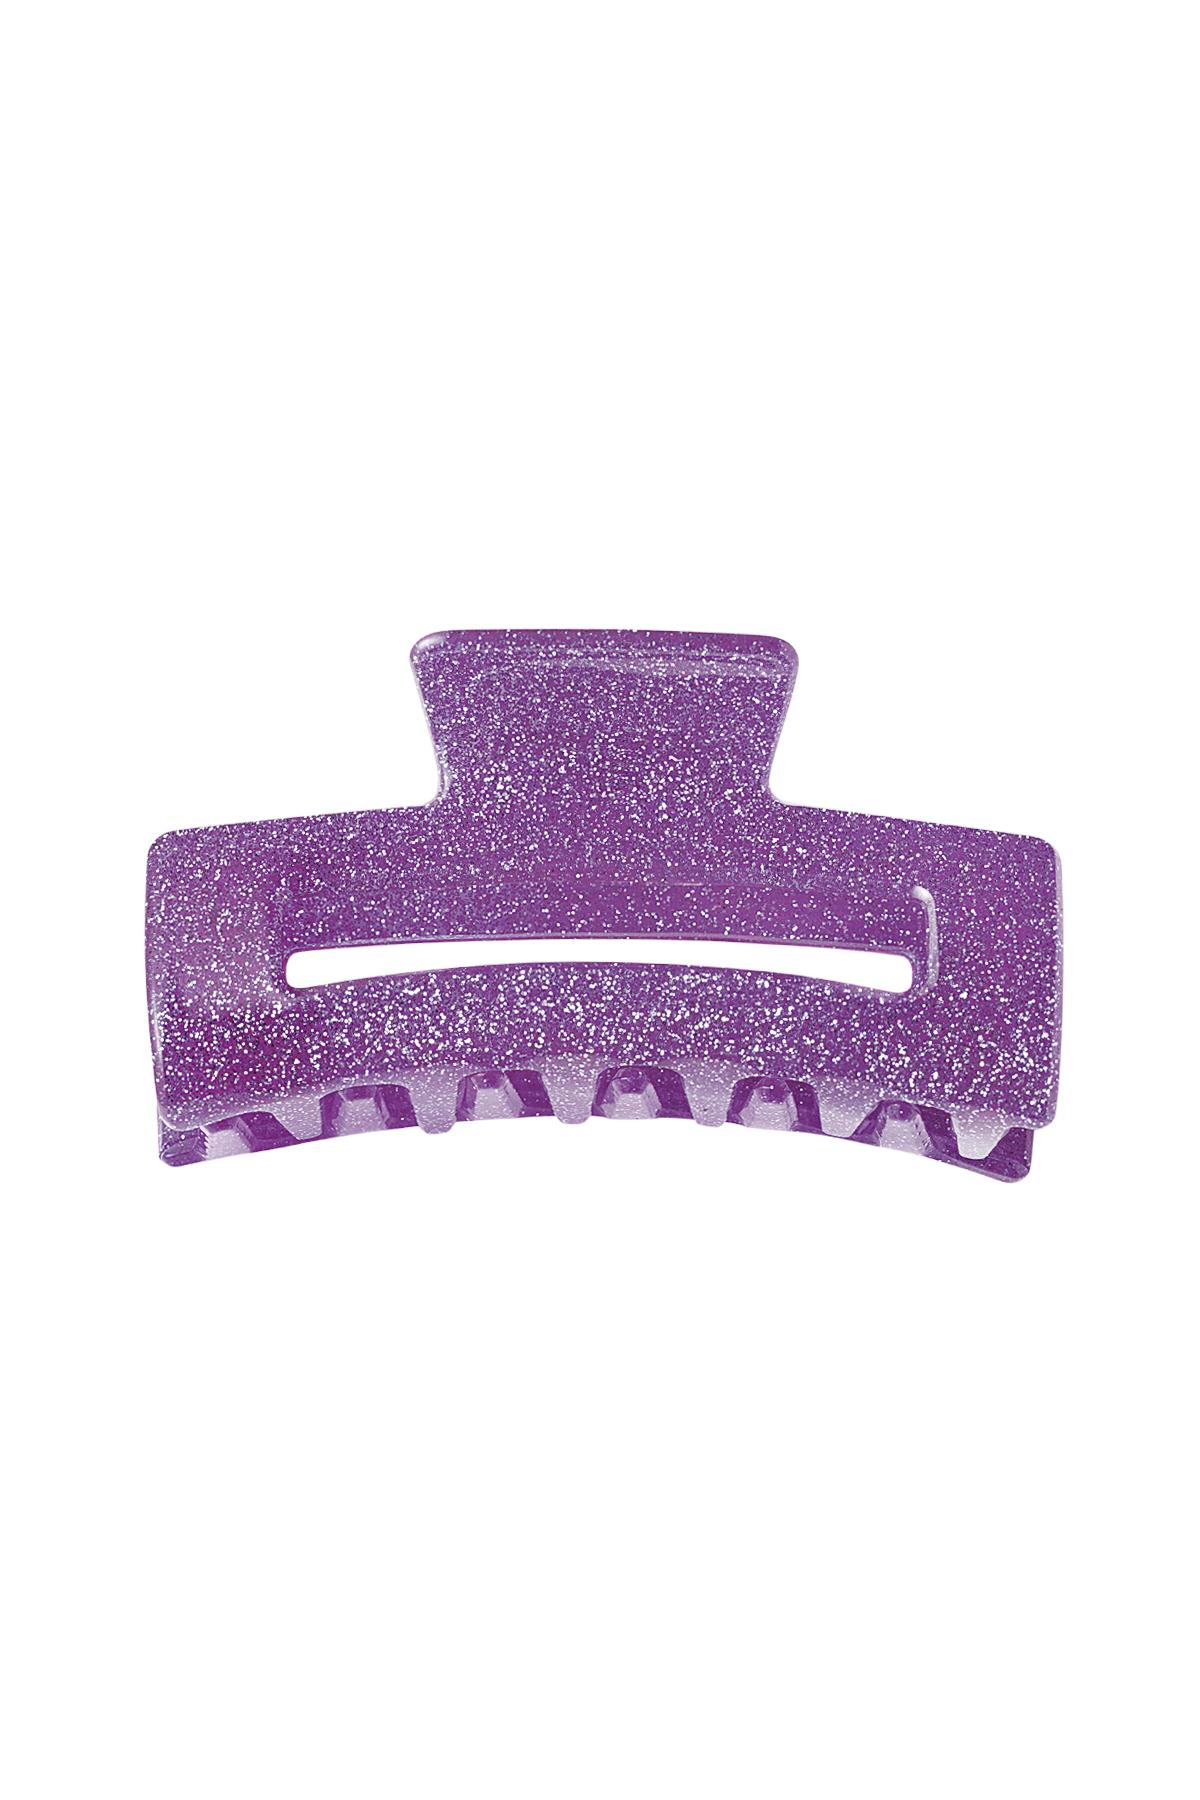 Fermaglio per capelli glitterato Purple Sheet Material h5 